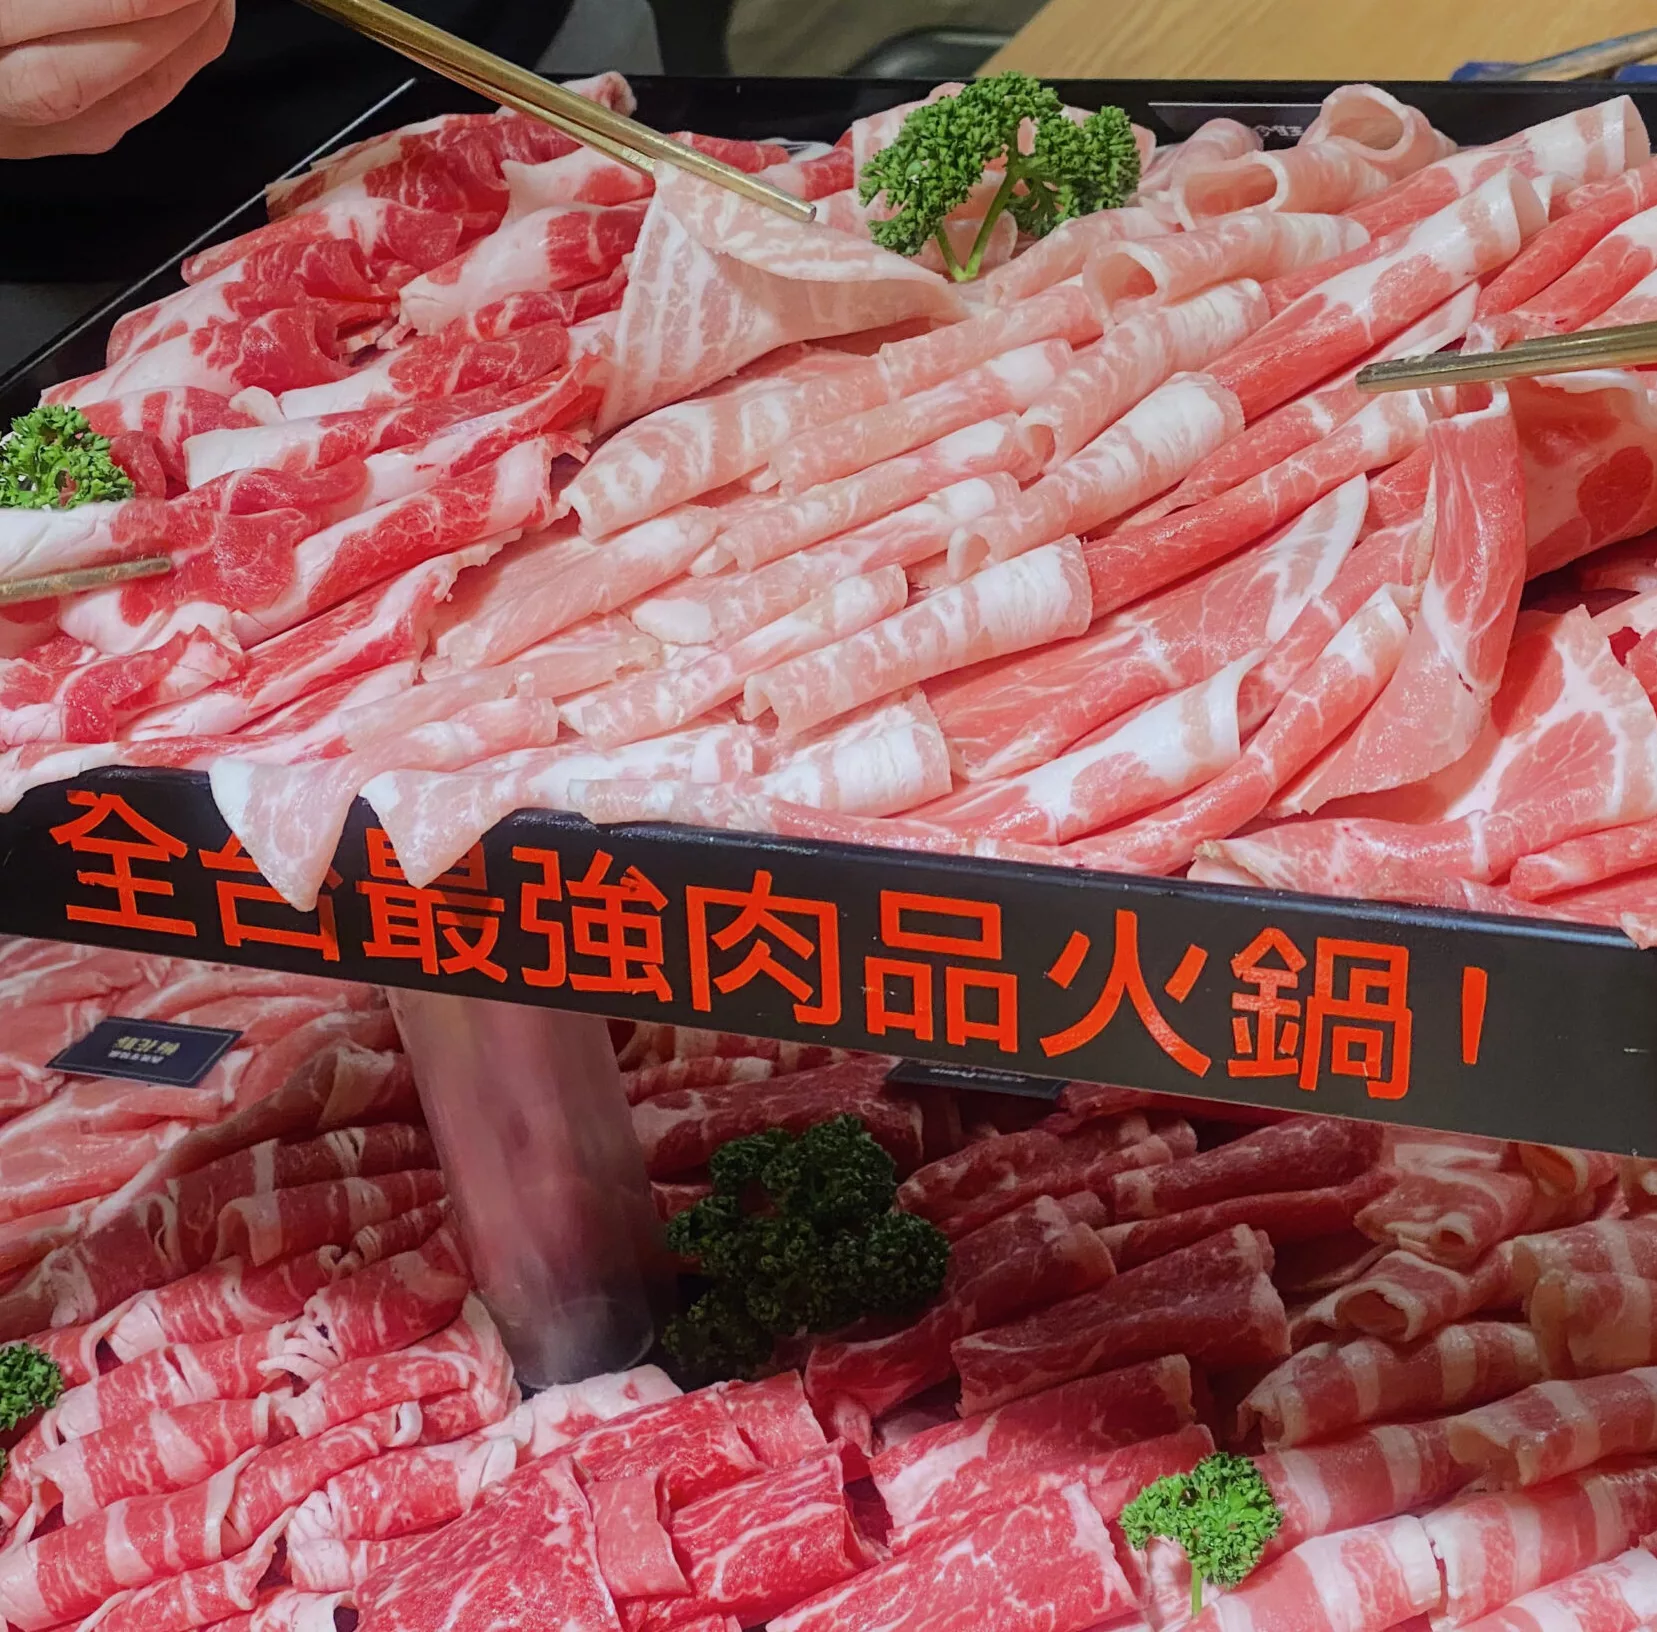 【天母美食】藏王極上鍋物天母店 號稱全台肉品最強火鍋 為您端上肉肉大平台 (菜單)